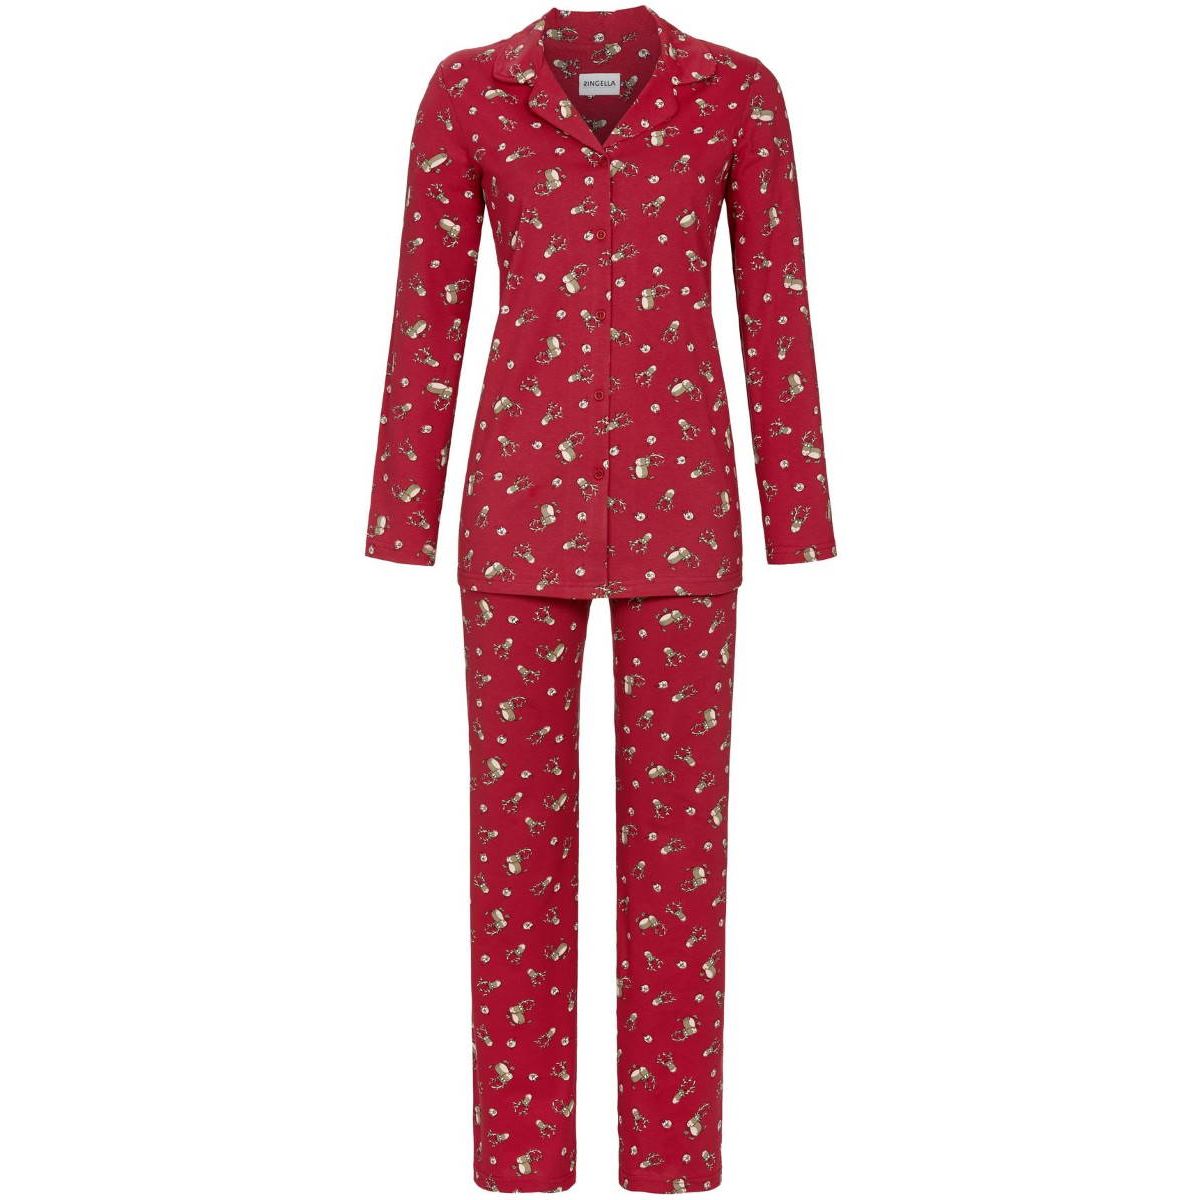 heuvel erwt Vakman Doorknoop kerst pyjama rood | Gratis verzending | Online de mooiste  pyjama's, nachthemden, ondermode en meer